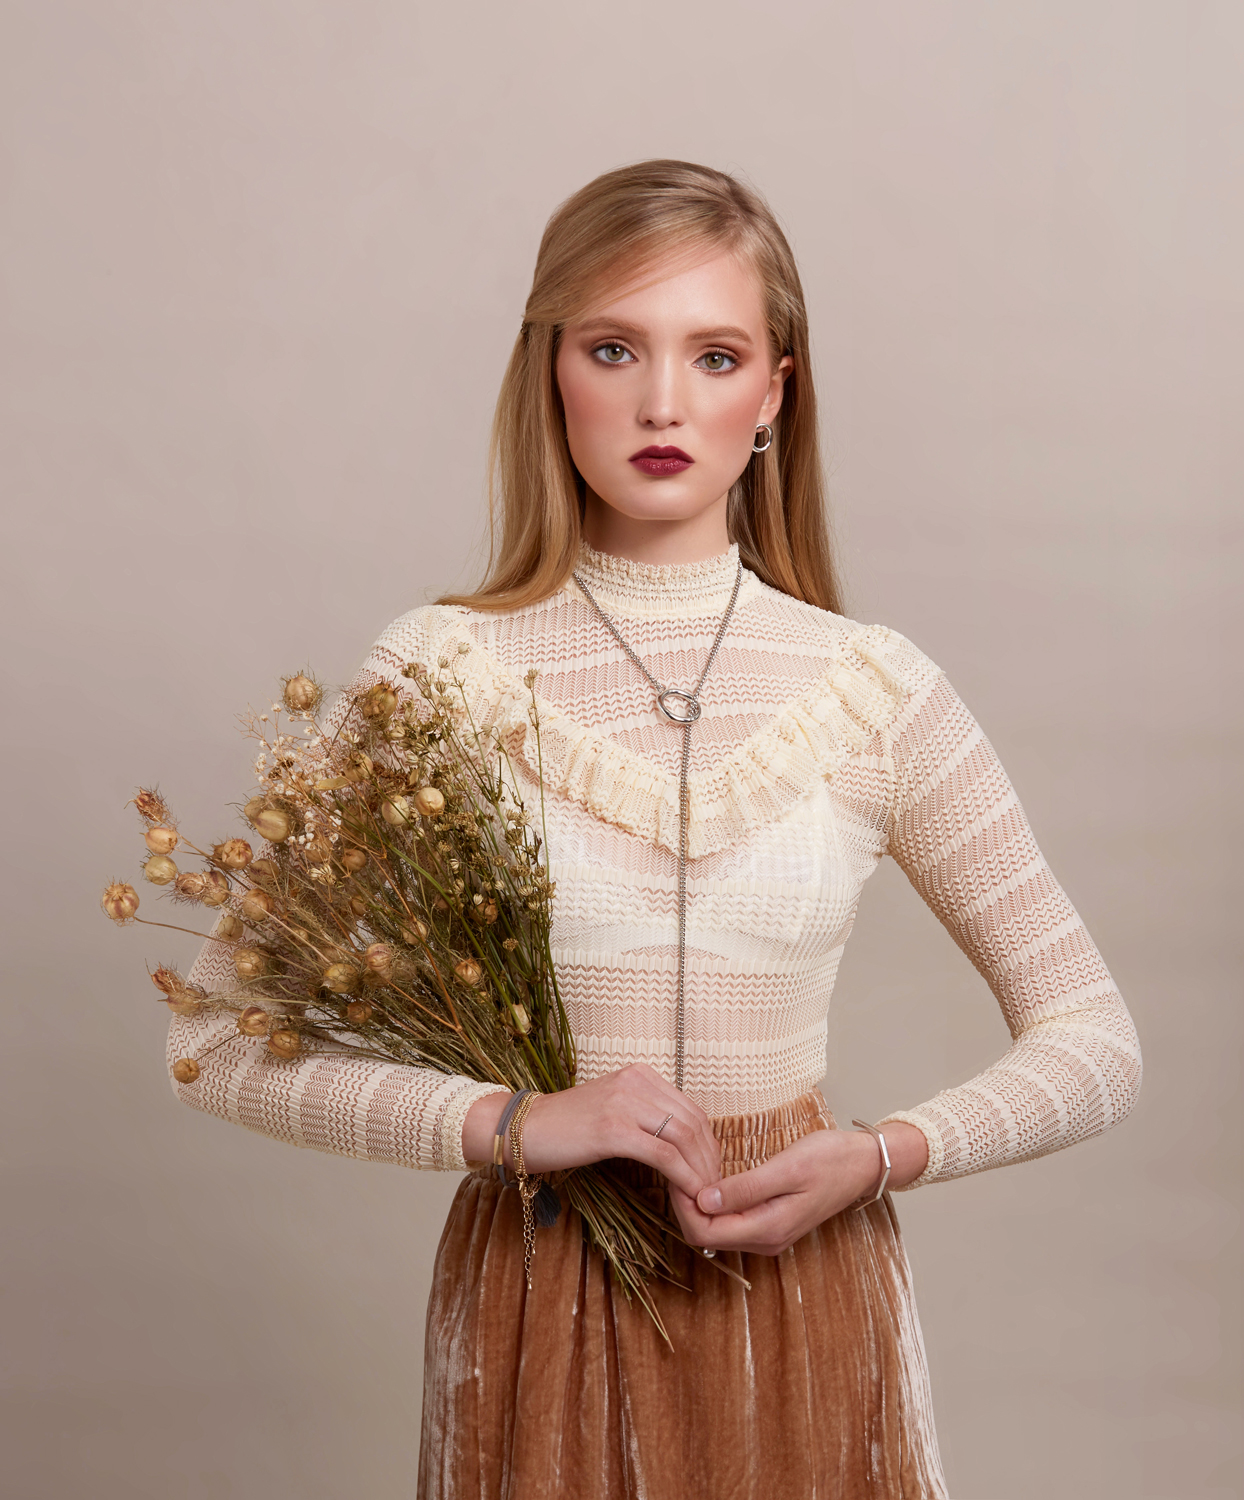 Editorial - Ashley Fox Designs Wedding Flowers Minnesota